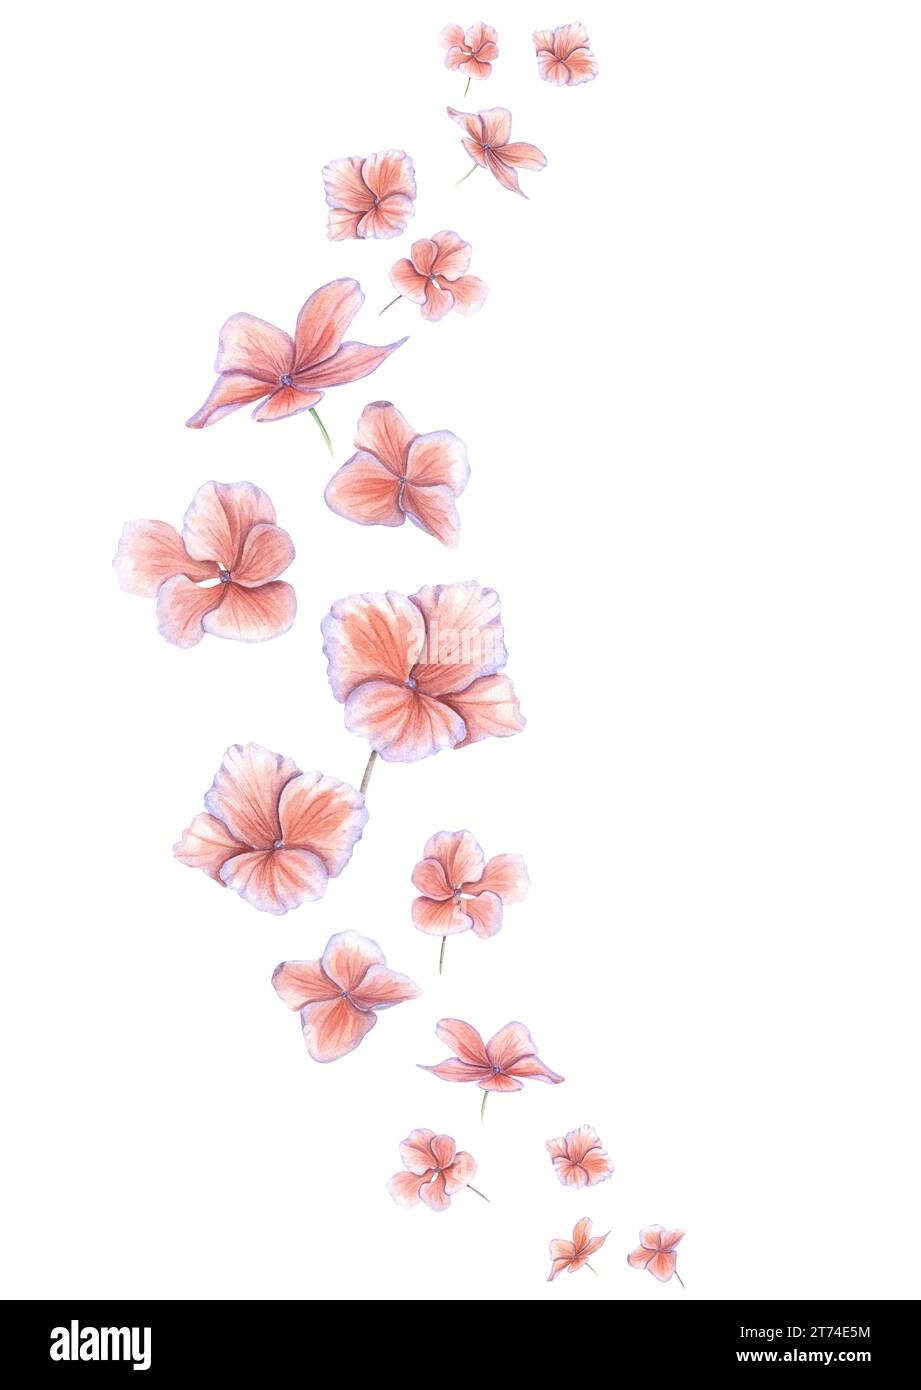 Hortensie-Blüten fliegen in einem Bogen nach oben. Rosa hortensia Blumenkopf. Gartenpflanze. Leerzeichen für Text. Aquarellabbildung. Leerzeichen für Text. Stockfoto